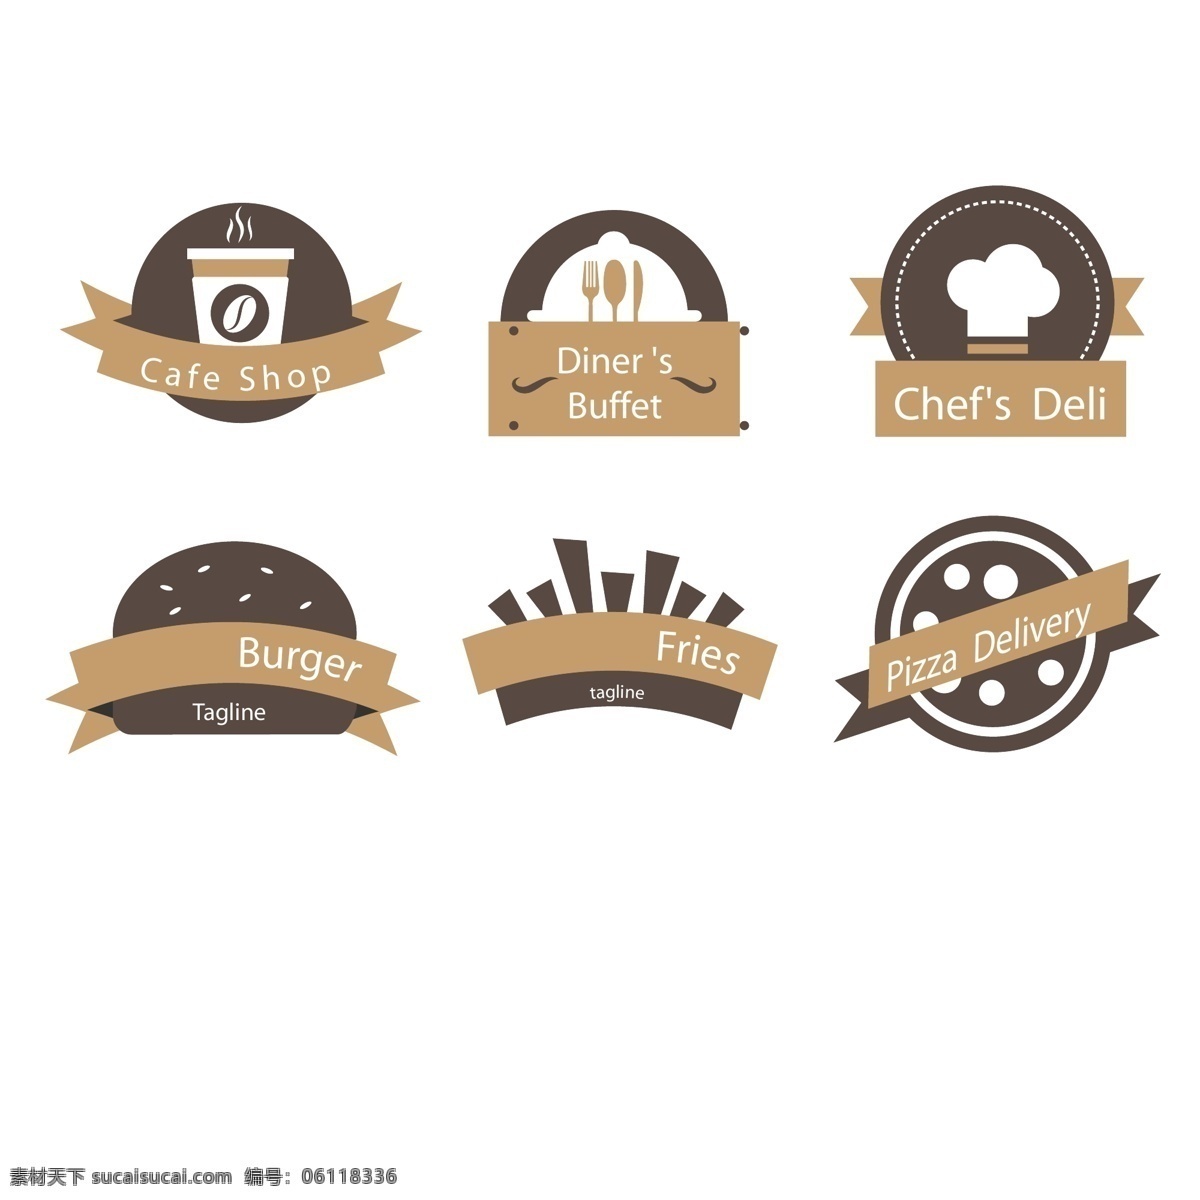 创意 快餐店 标志 矢量 标签 餐饮 商标 汉堡包 餐厅标志 食品标志 咖啡